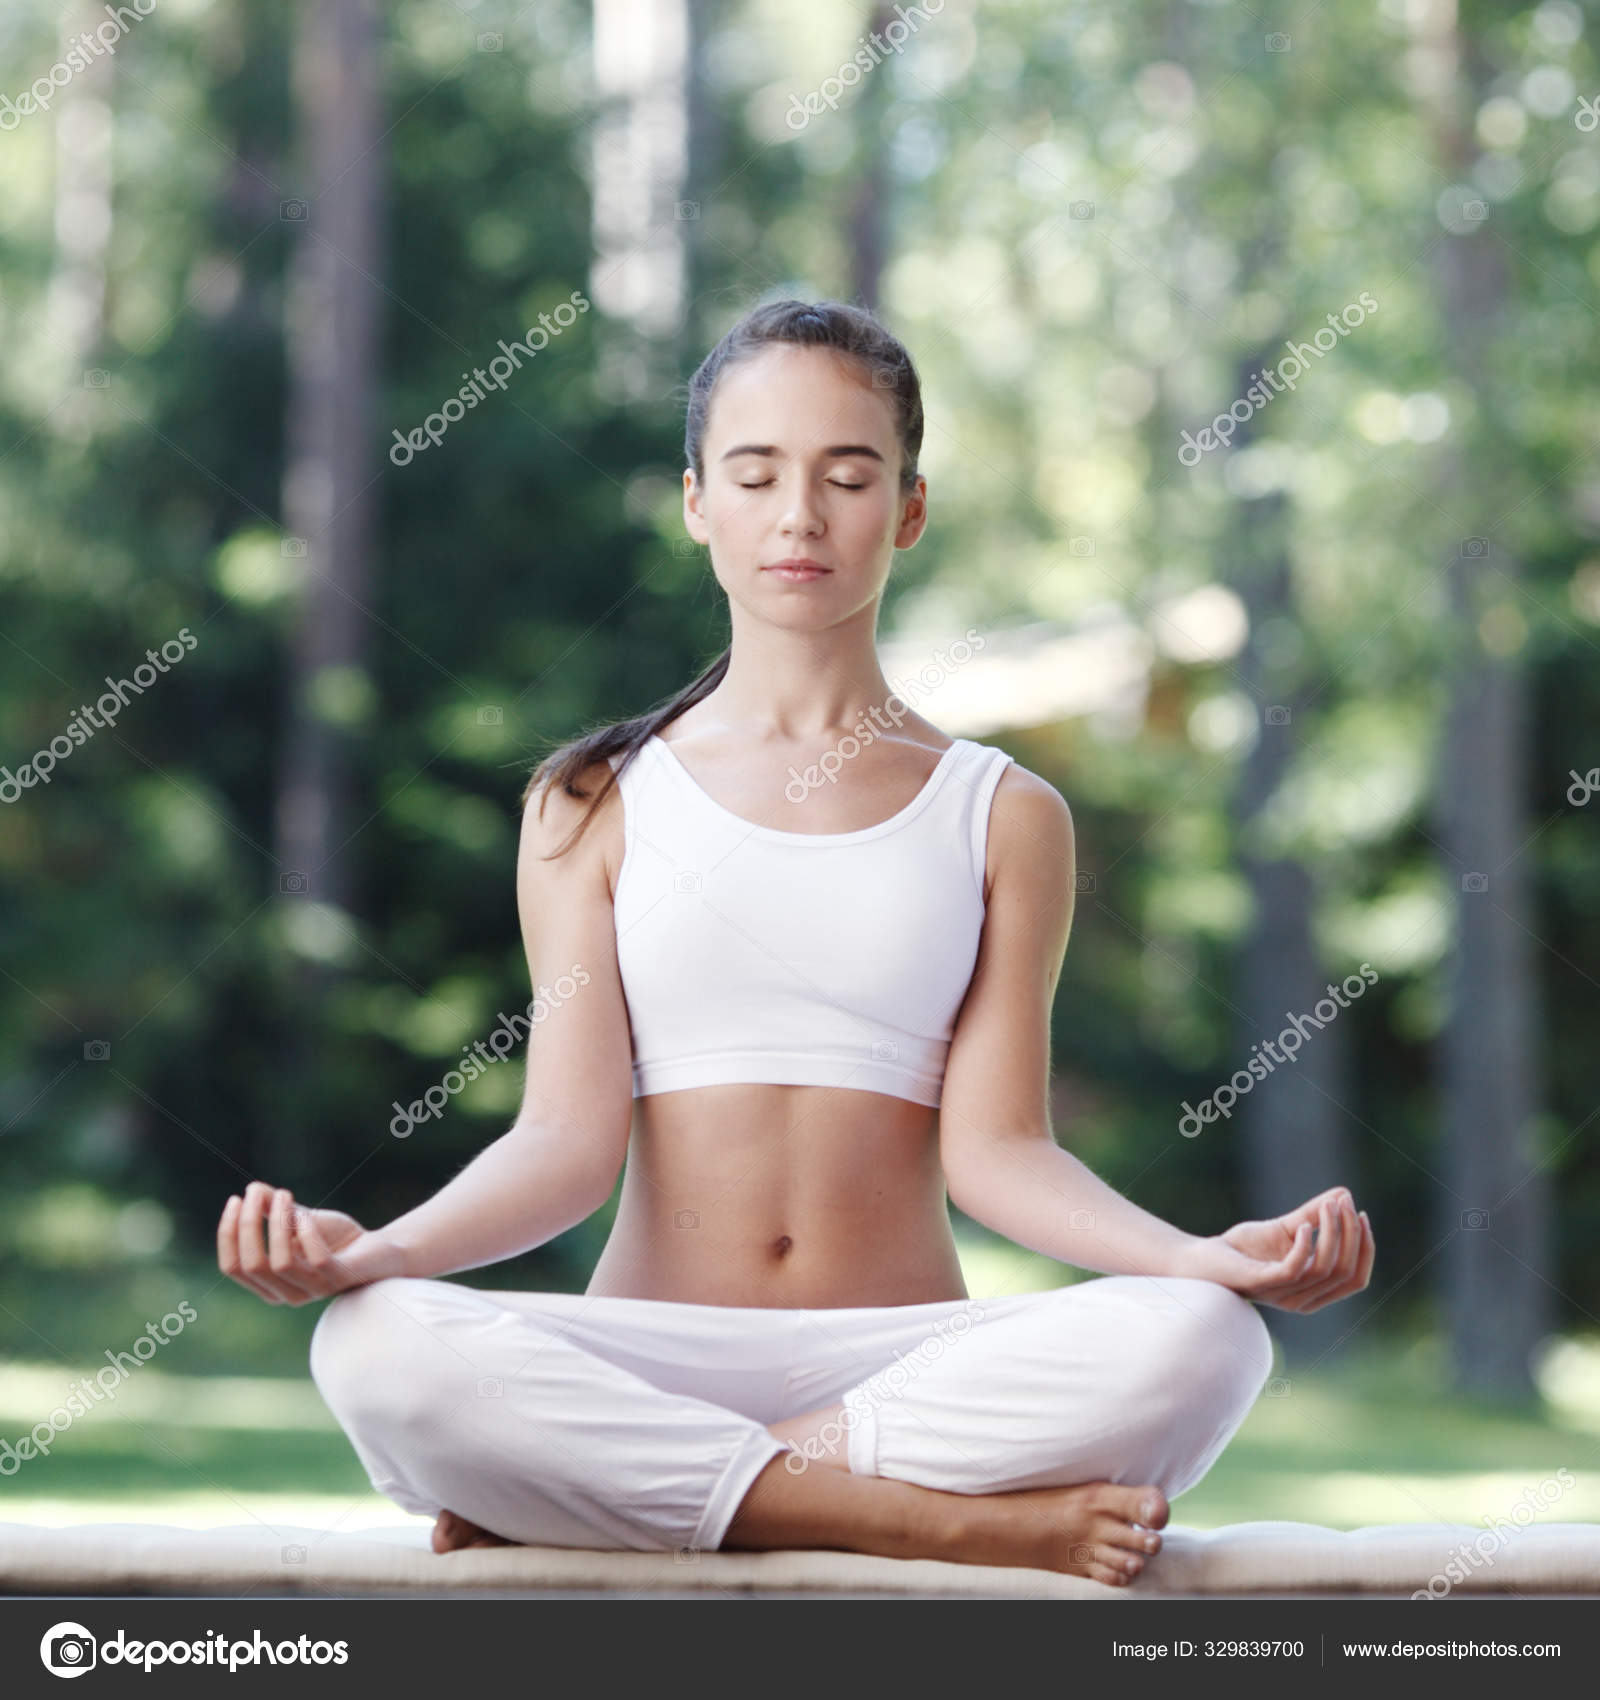 Woman doing yoga exercise Stock Photo by ©ALotOfPeople 329839700